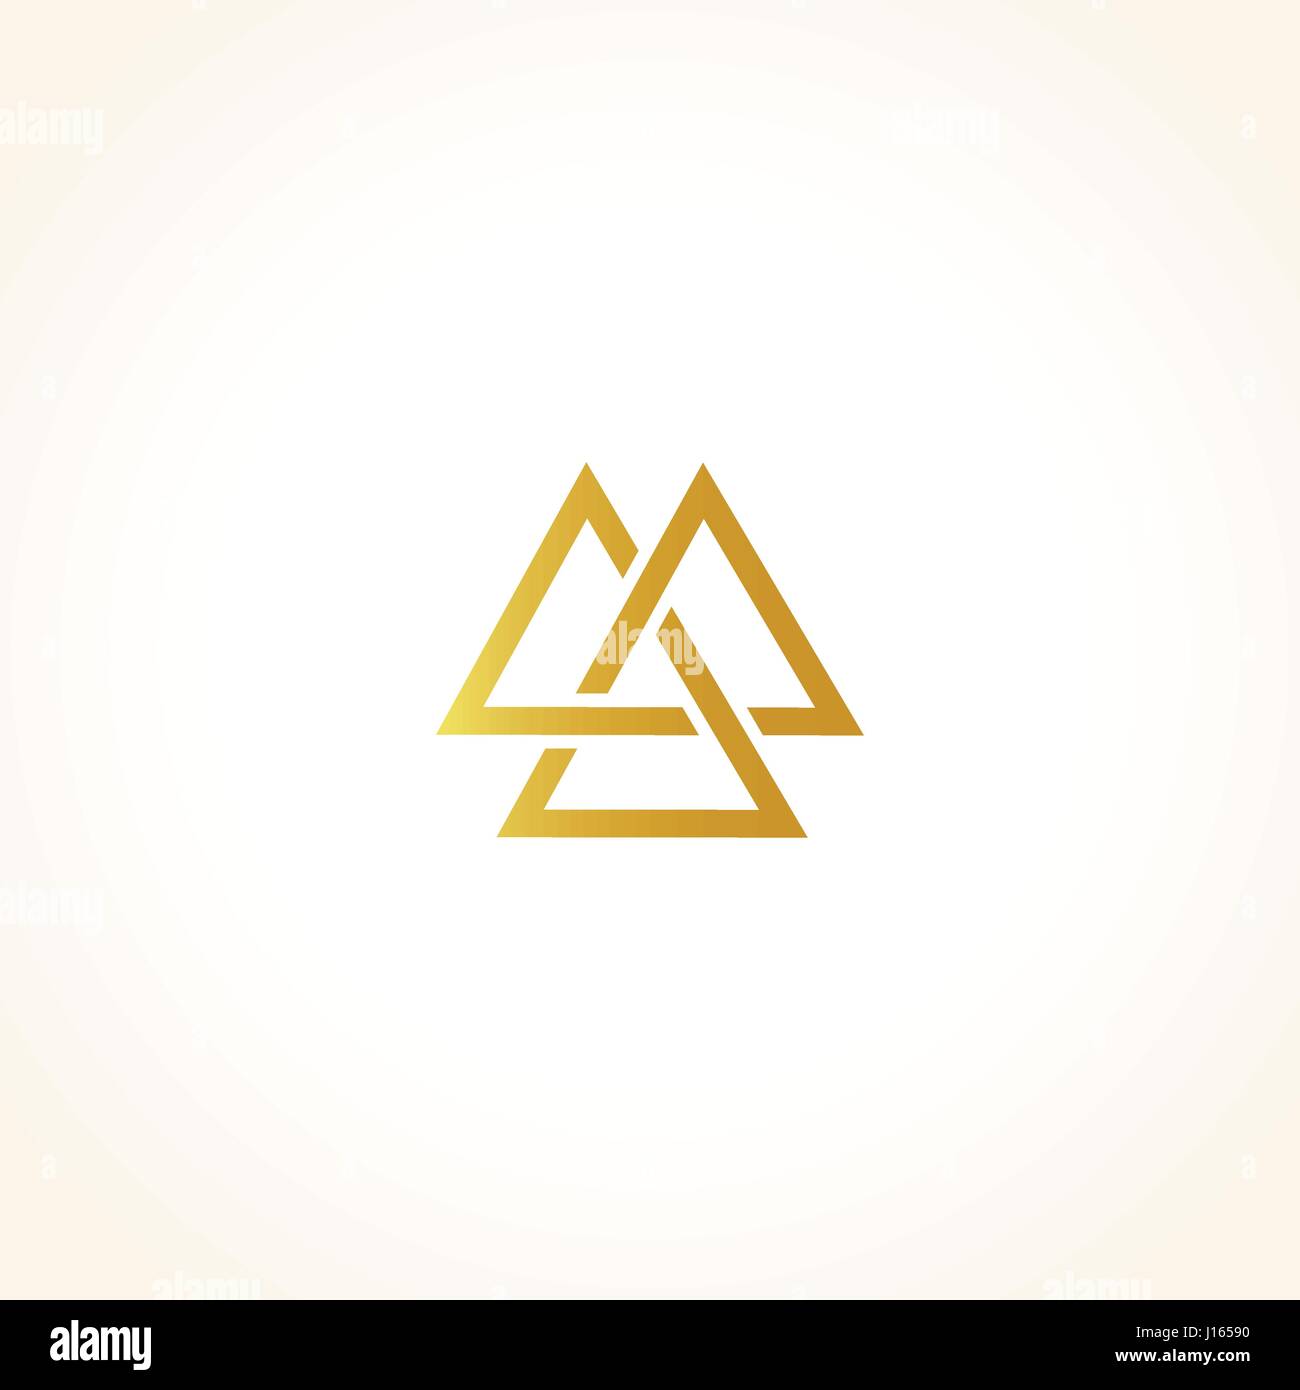 Isolierte abstrakte goldene Farbe Dreiecke Kontur Logo auf schwarzem Hintergrund, geometrische Dreiecksform Logo, gold Luxus-Dekoration-Vektor-illustration Stock Vektor